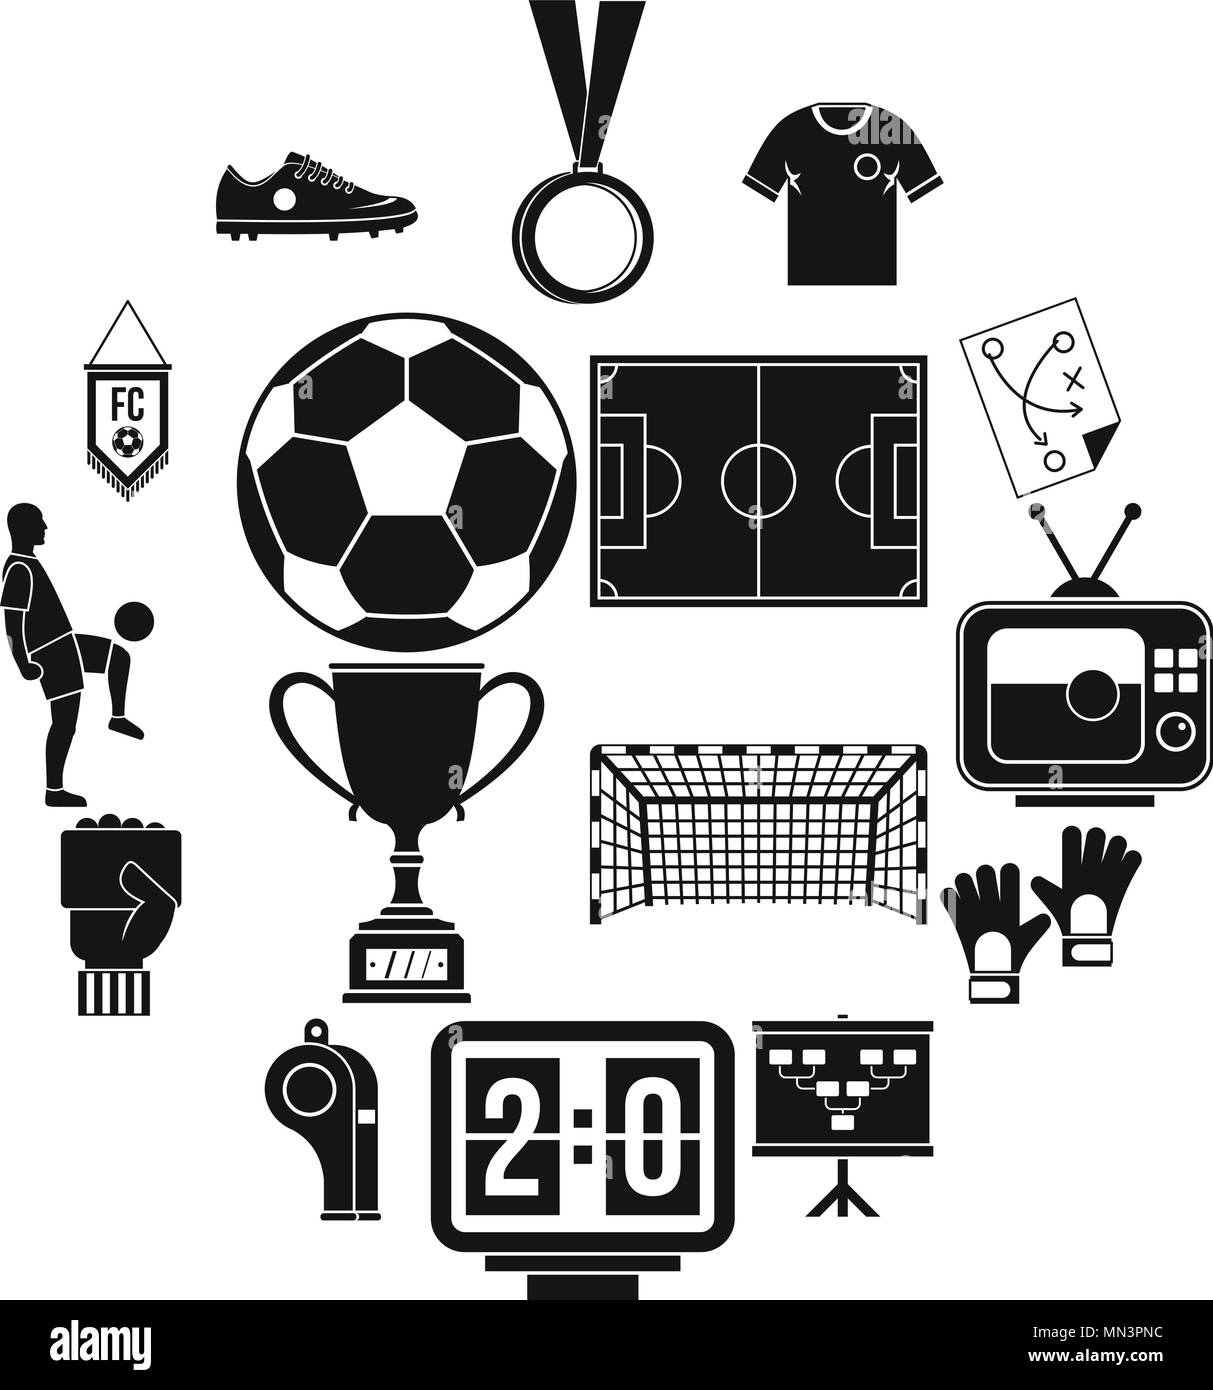 Fußball-Fußball-Symbole, einfachen Stil Stock-Vektorgrafik - Alamy